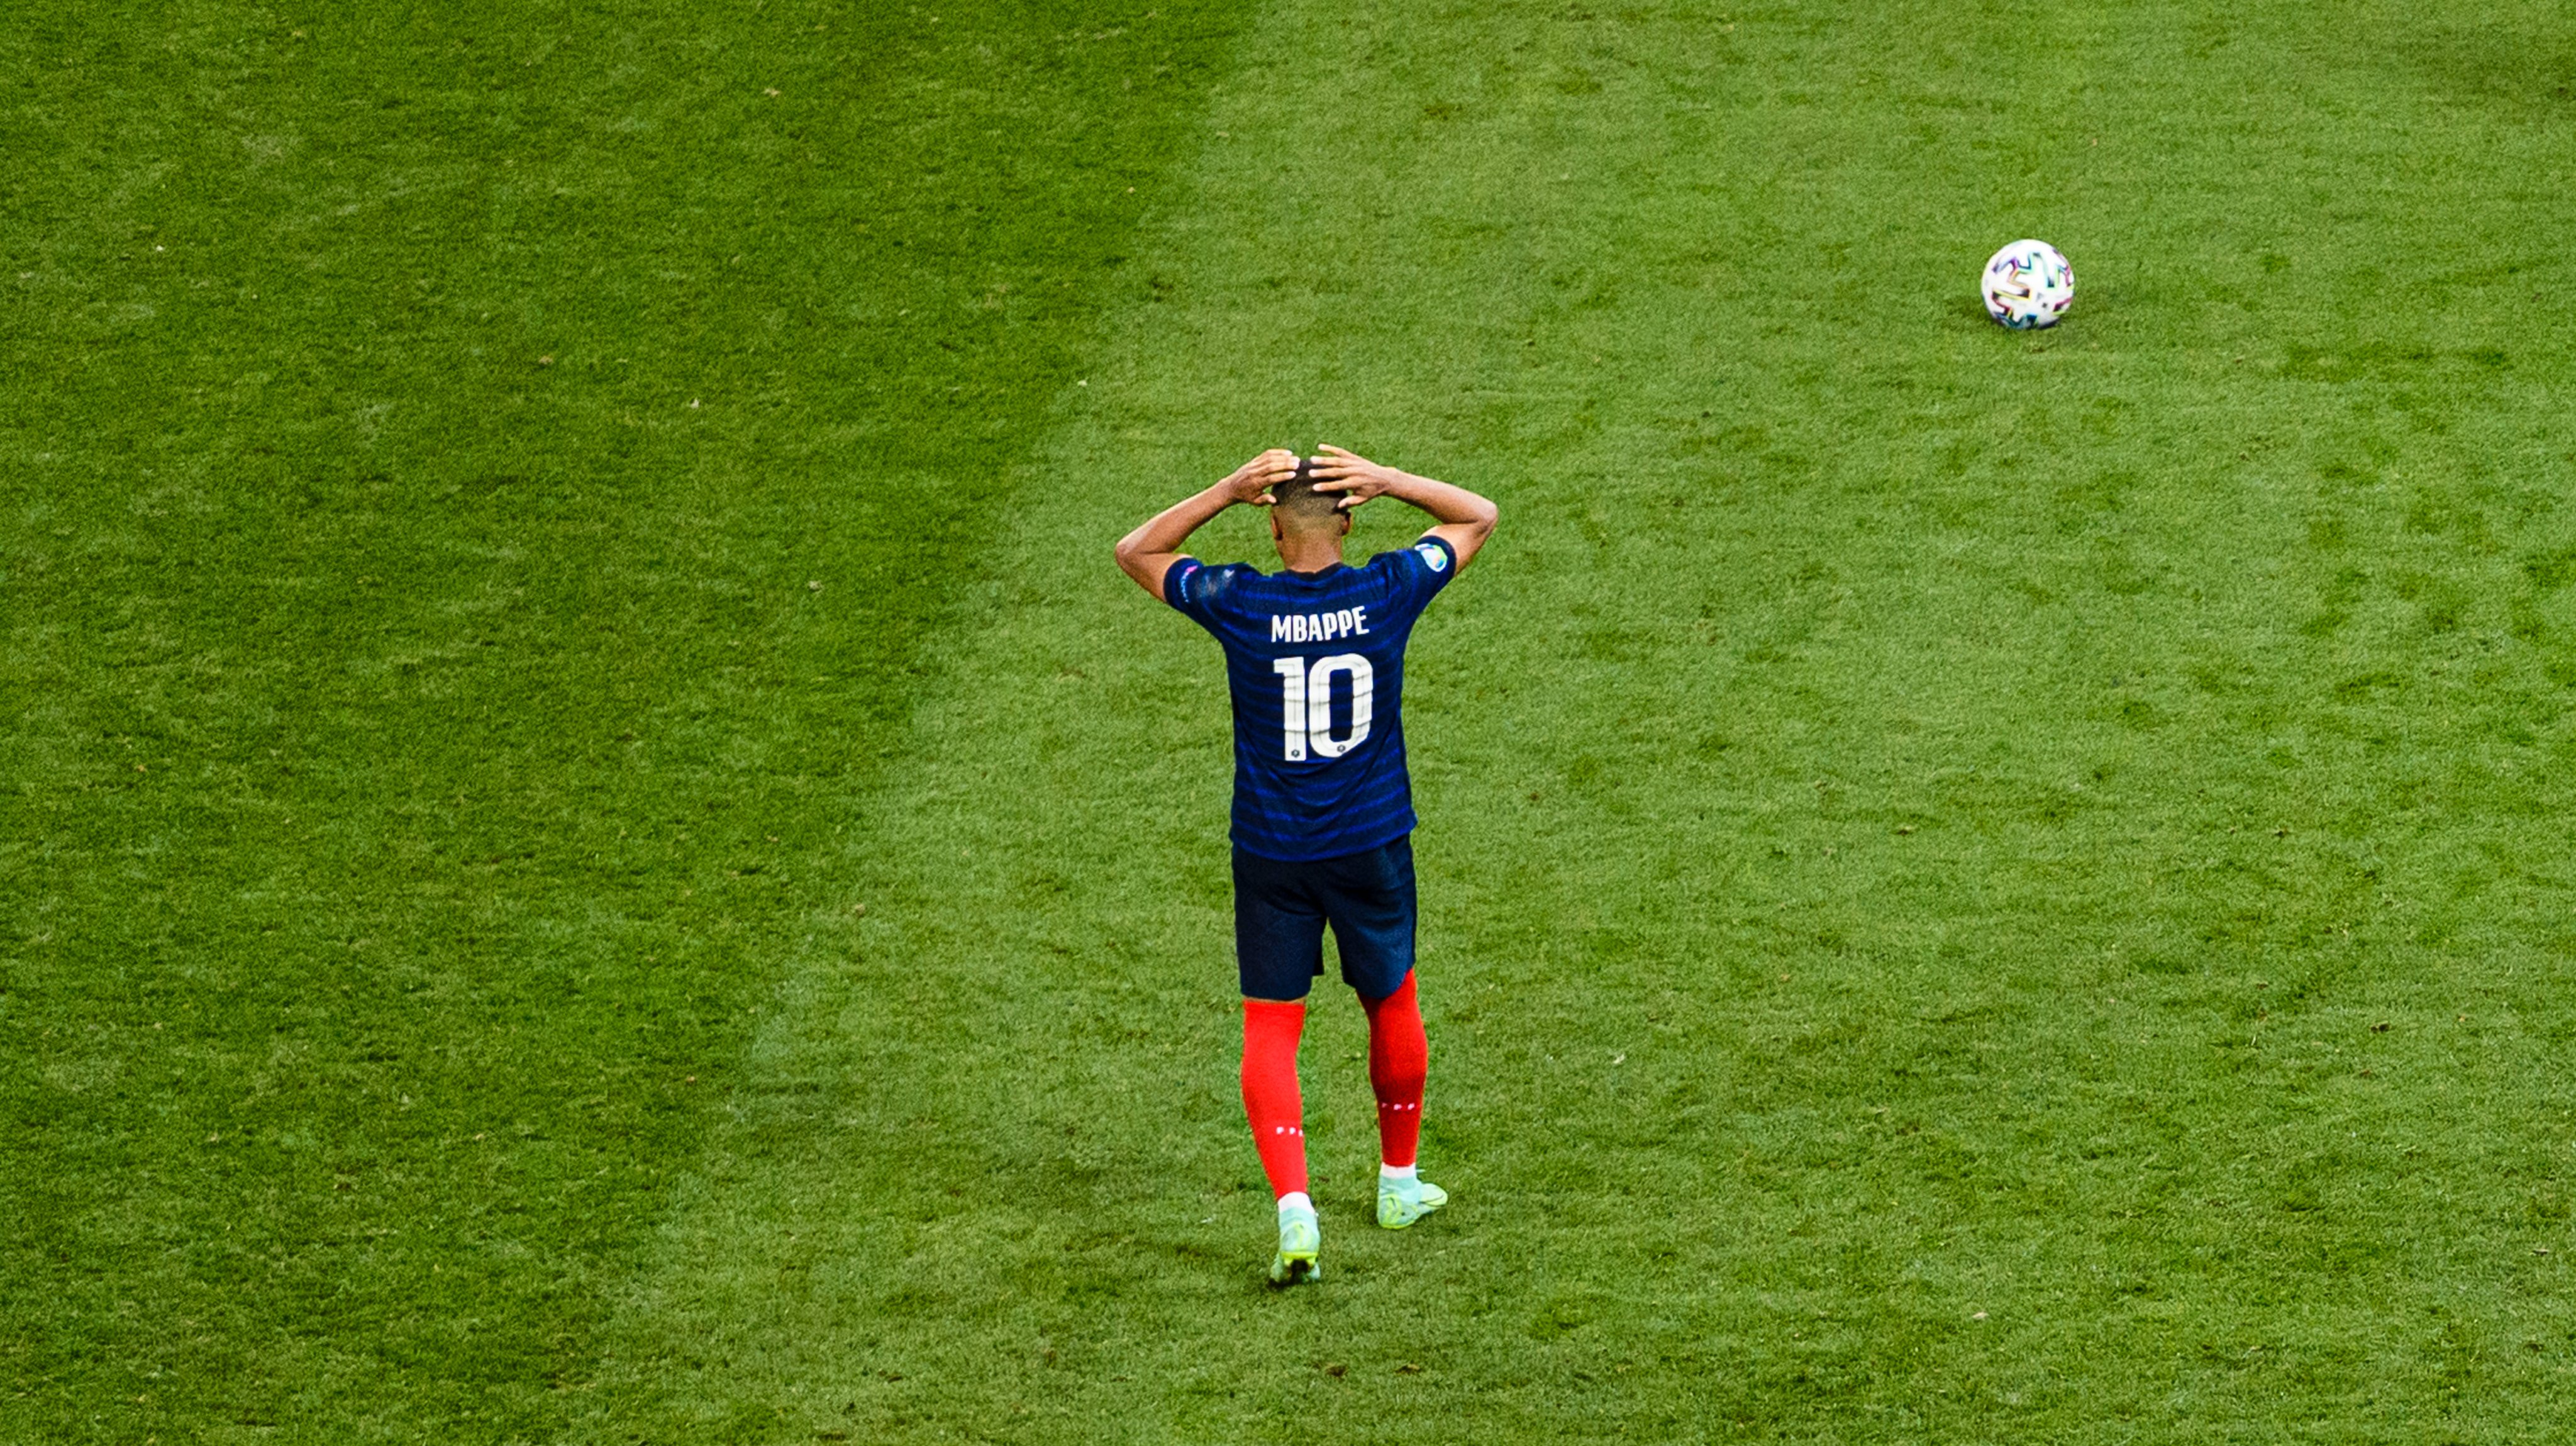 Mbappé falhou o penálti decisivo no décimo e último castigo máximo, com a França a perder com a Suíça nas grandes penalidades